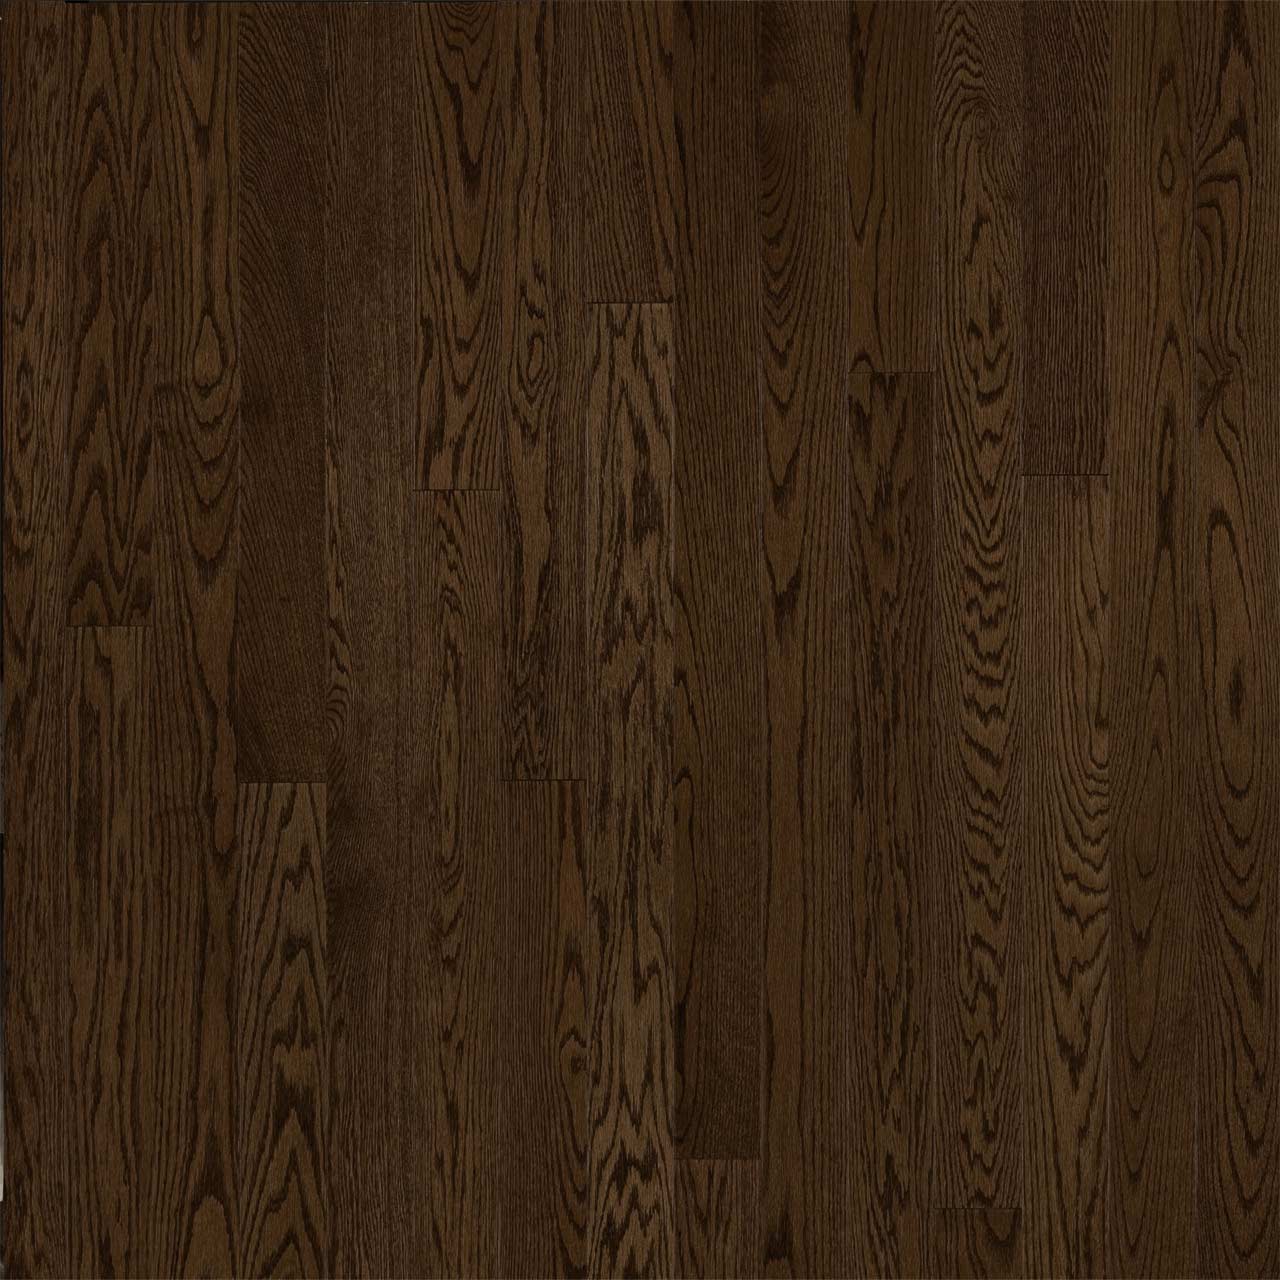 Hardwood SolidGenius & Engenius Red Oak Sample 5